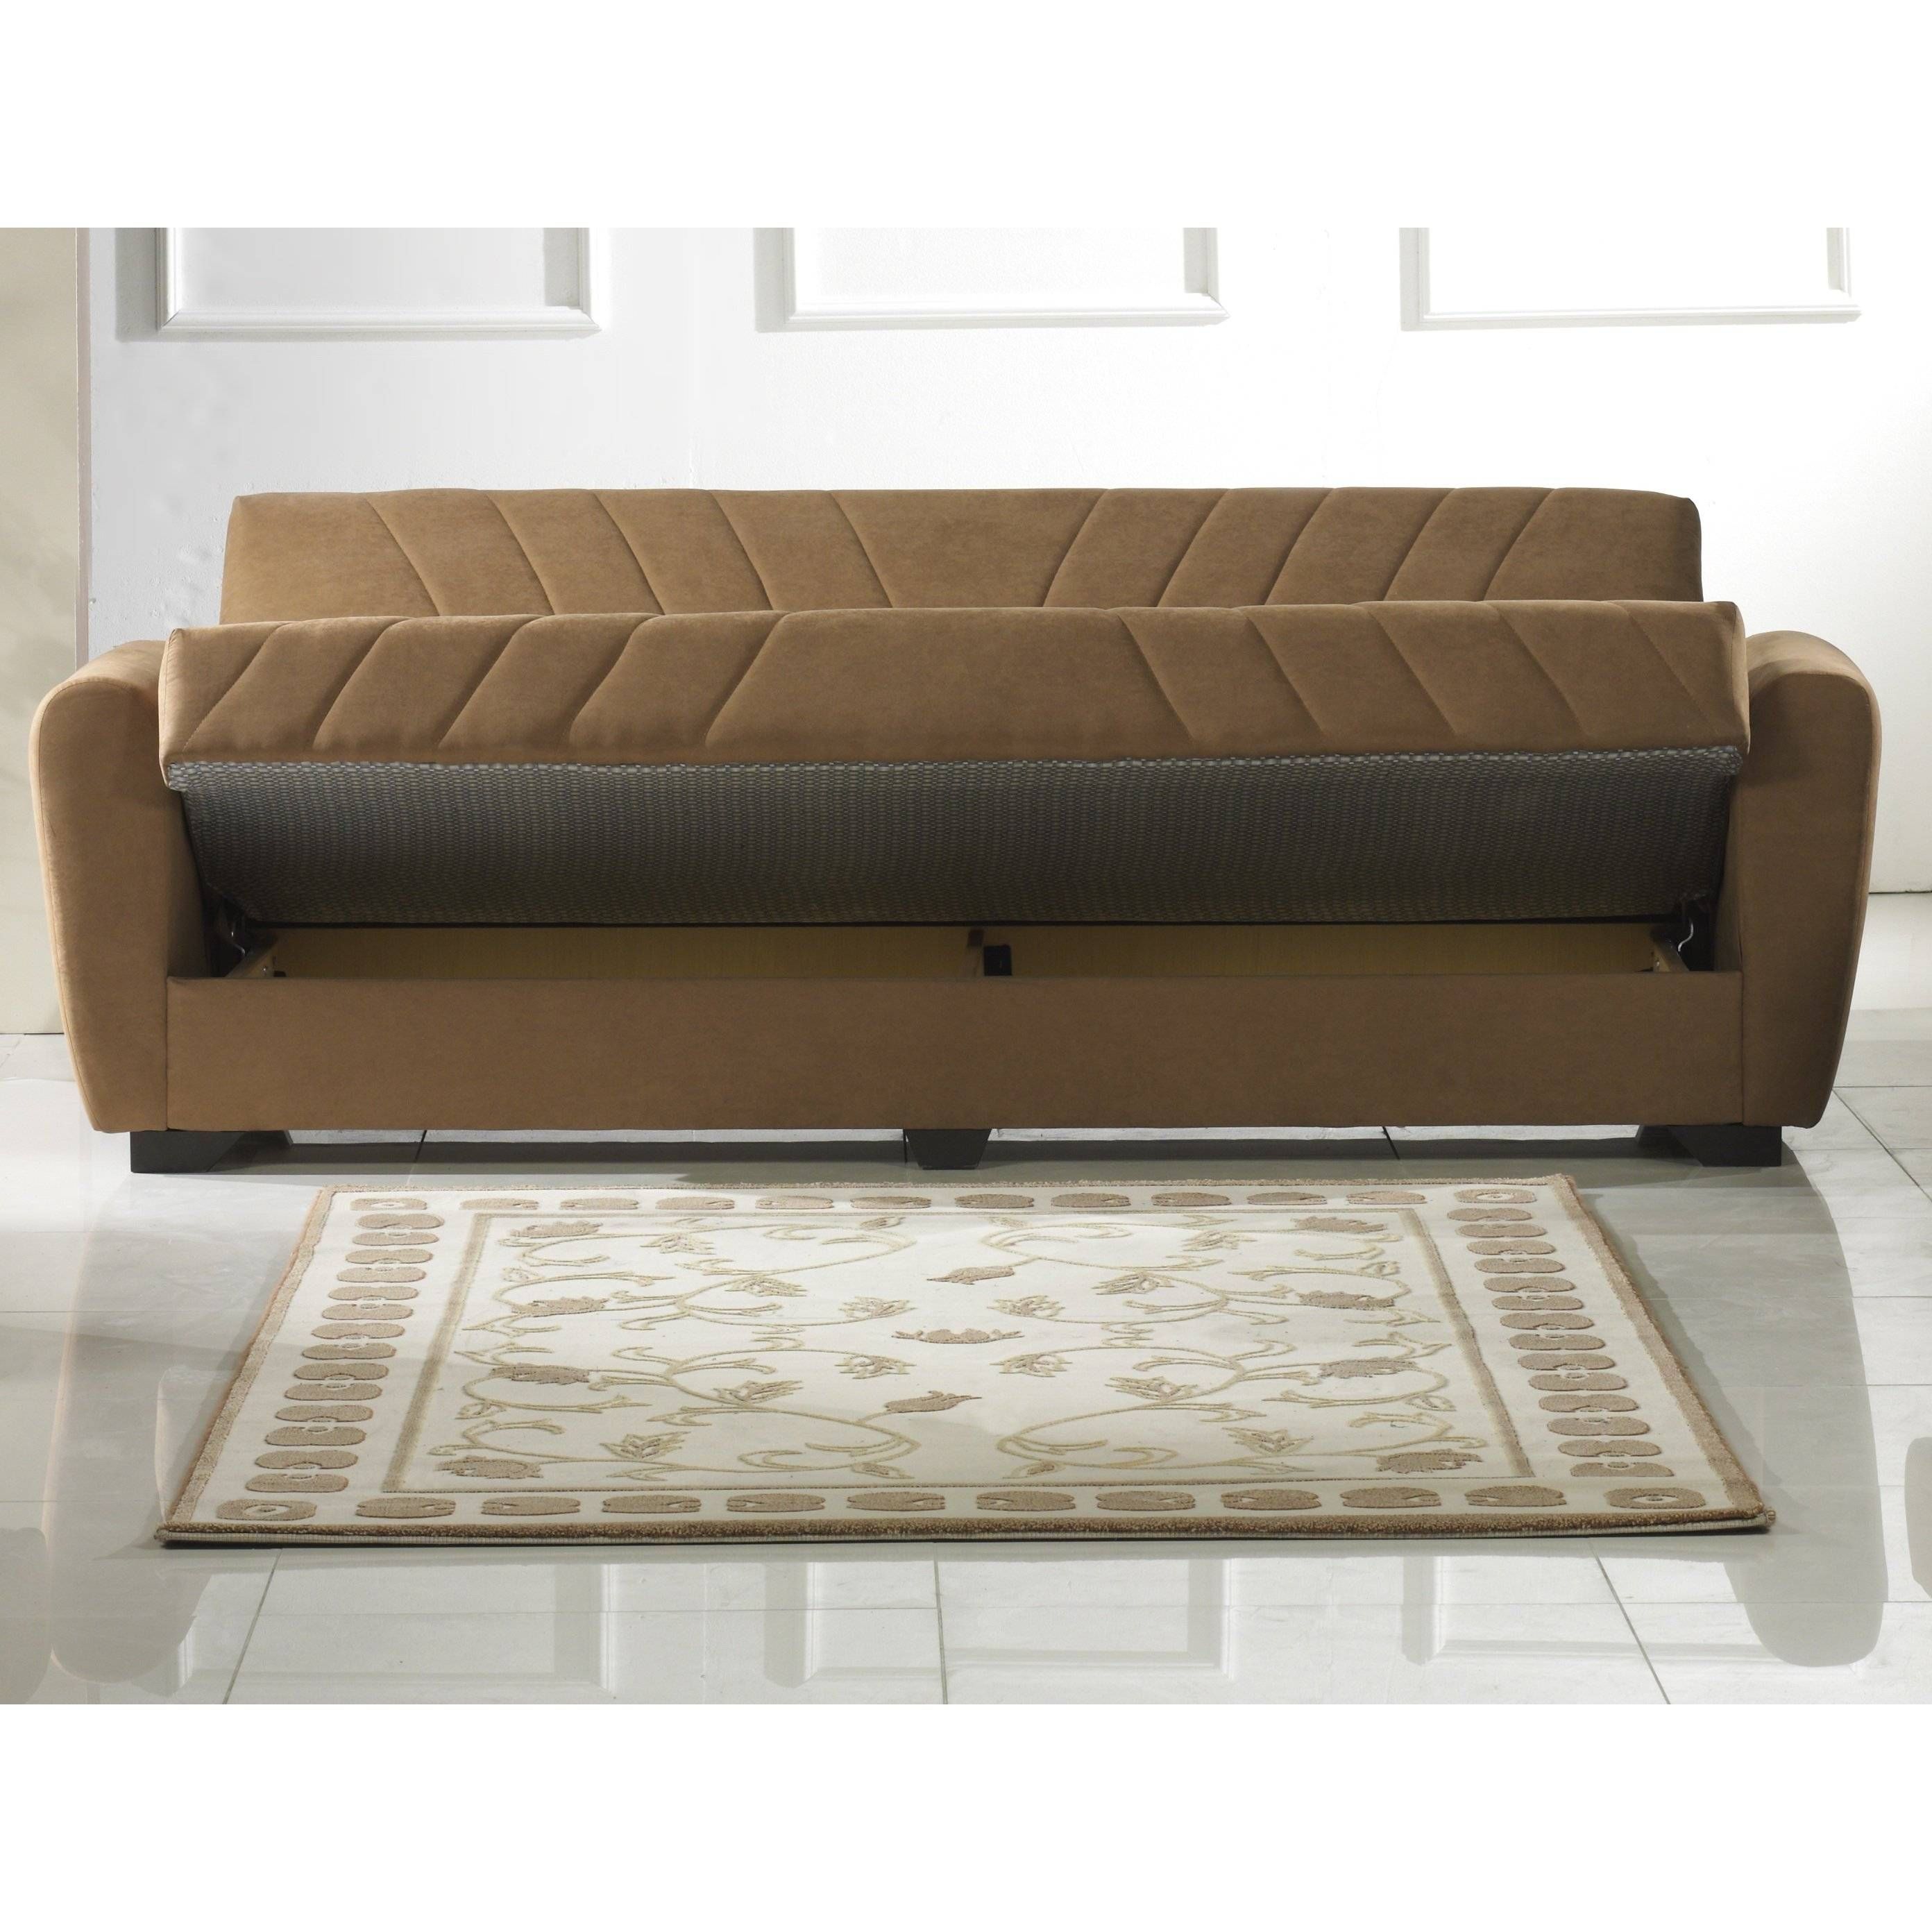 Furniture: Tufted Velvet Sofa | Tufted Vintage Sofa | Ava Velvet For Ava Tufted Sleeper Sofas (View 14 of 15)